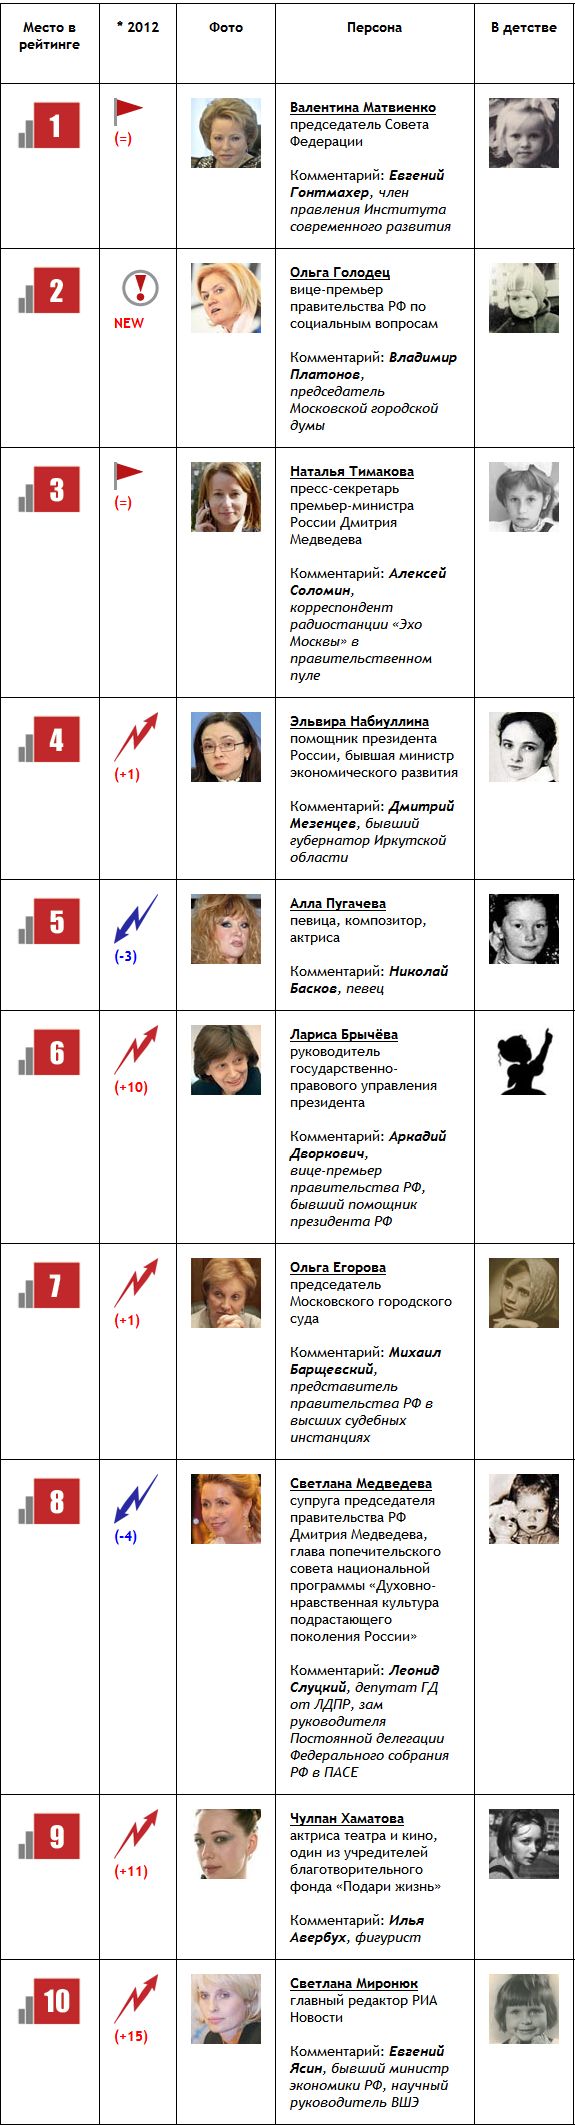 ТОП-100 самых влиятельных женщин РФ (10 фото)